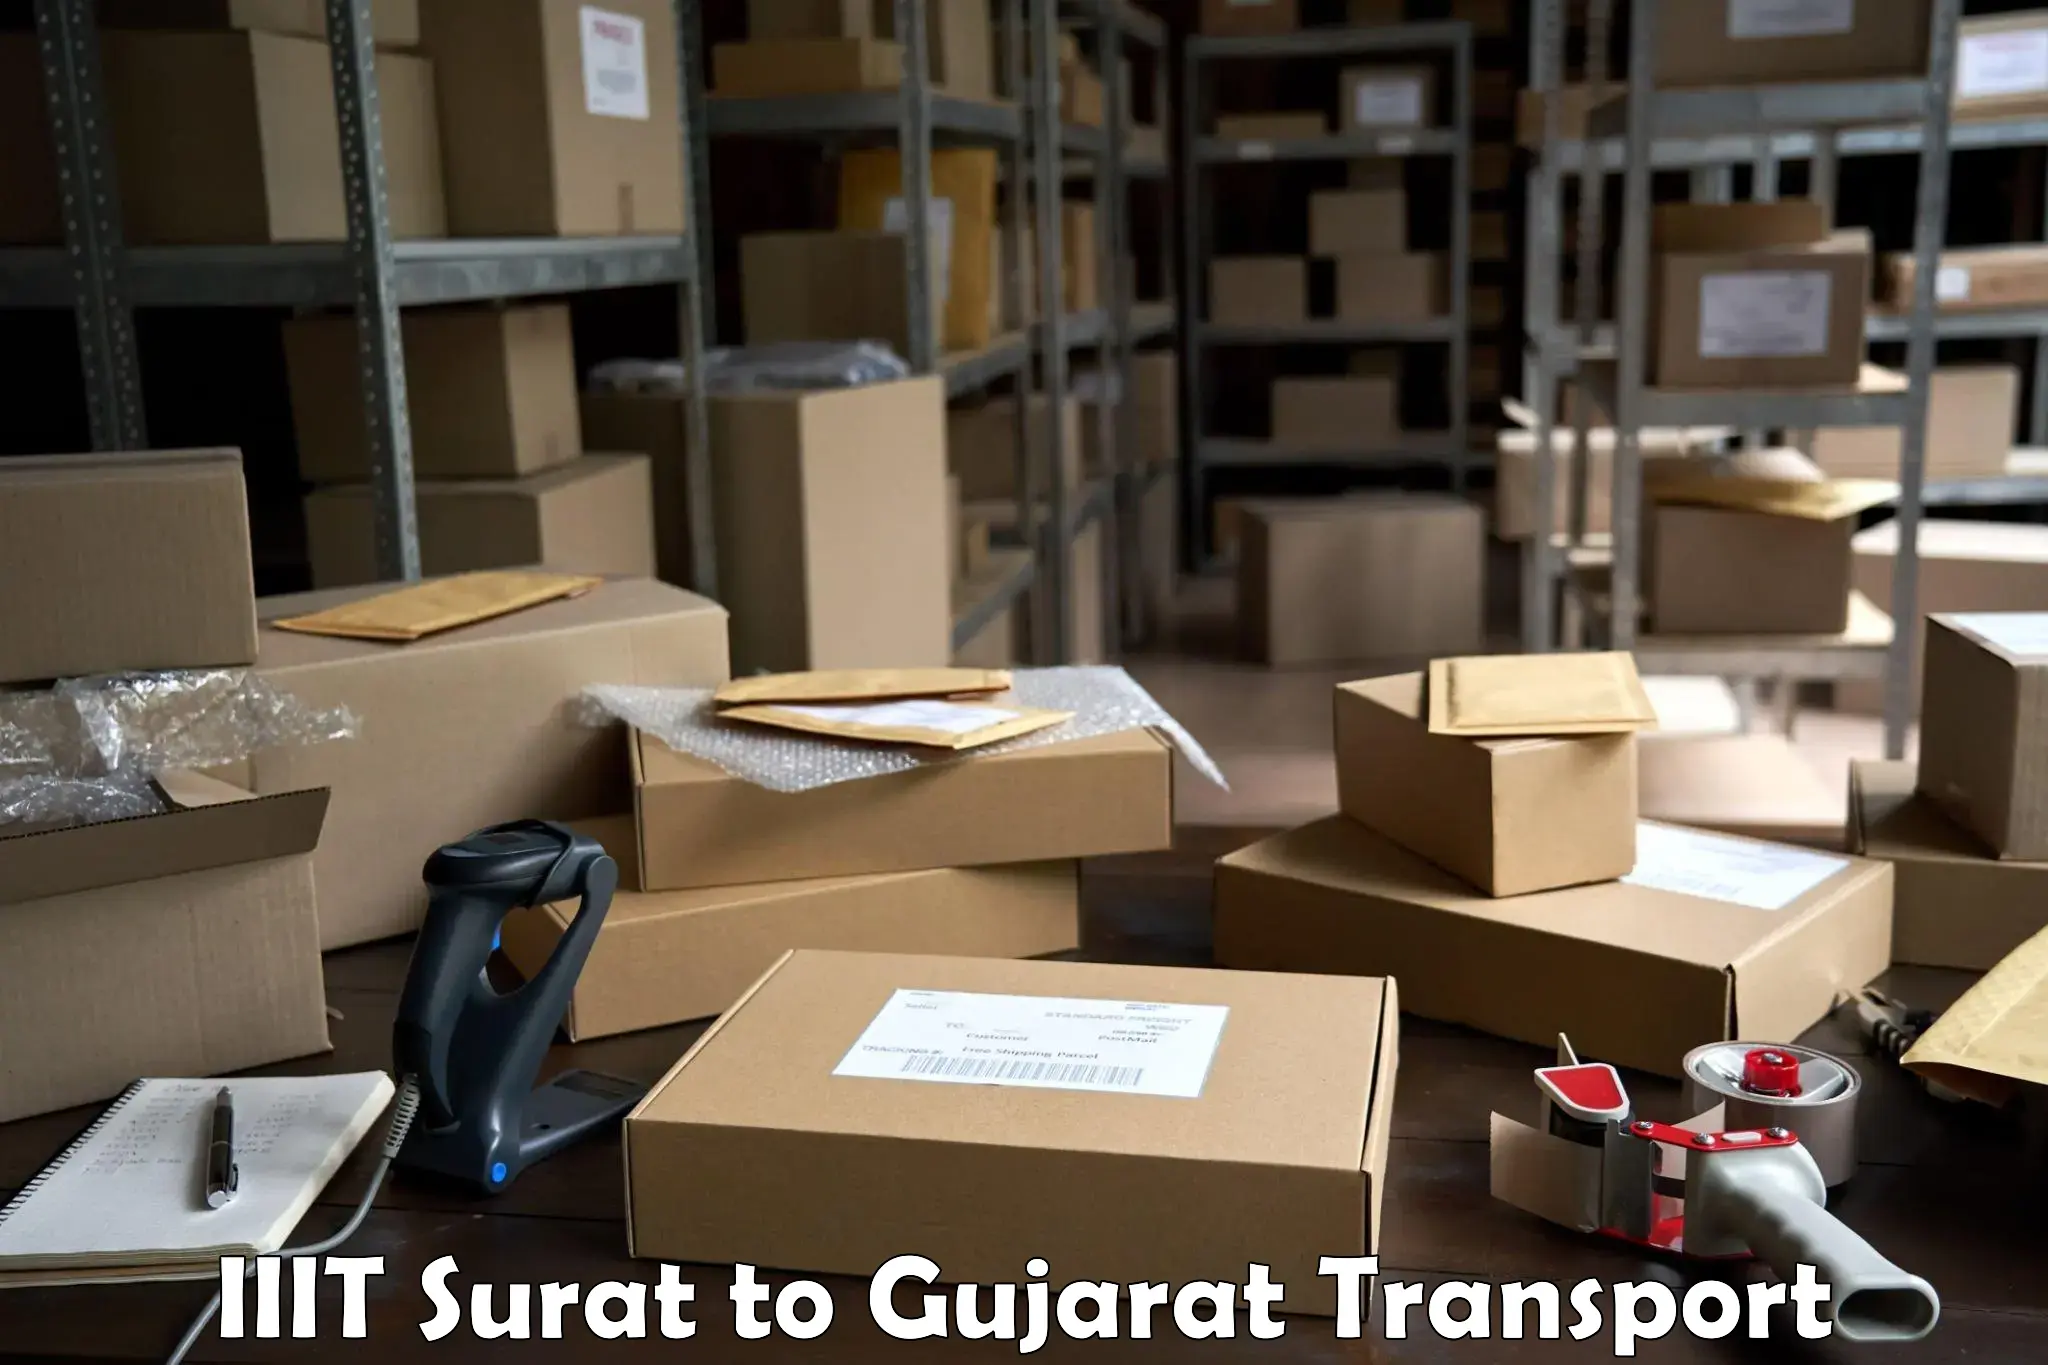 Truck transport companies in India in IIIT Surat to Veraval